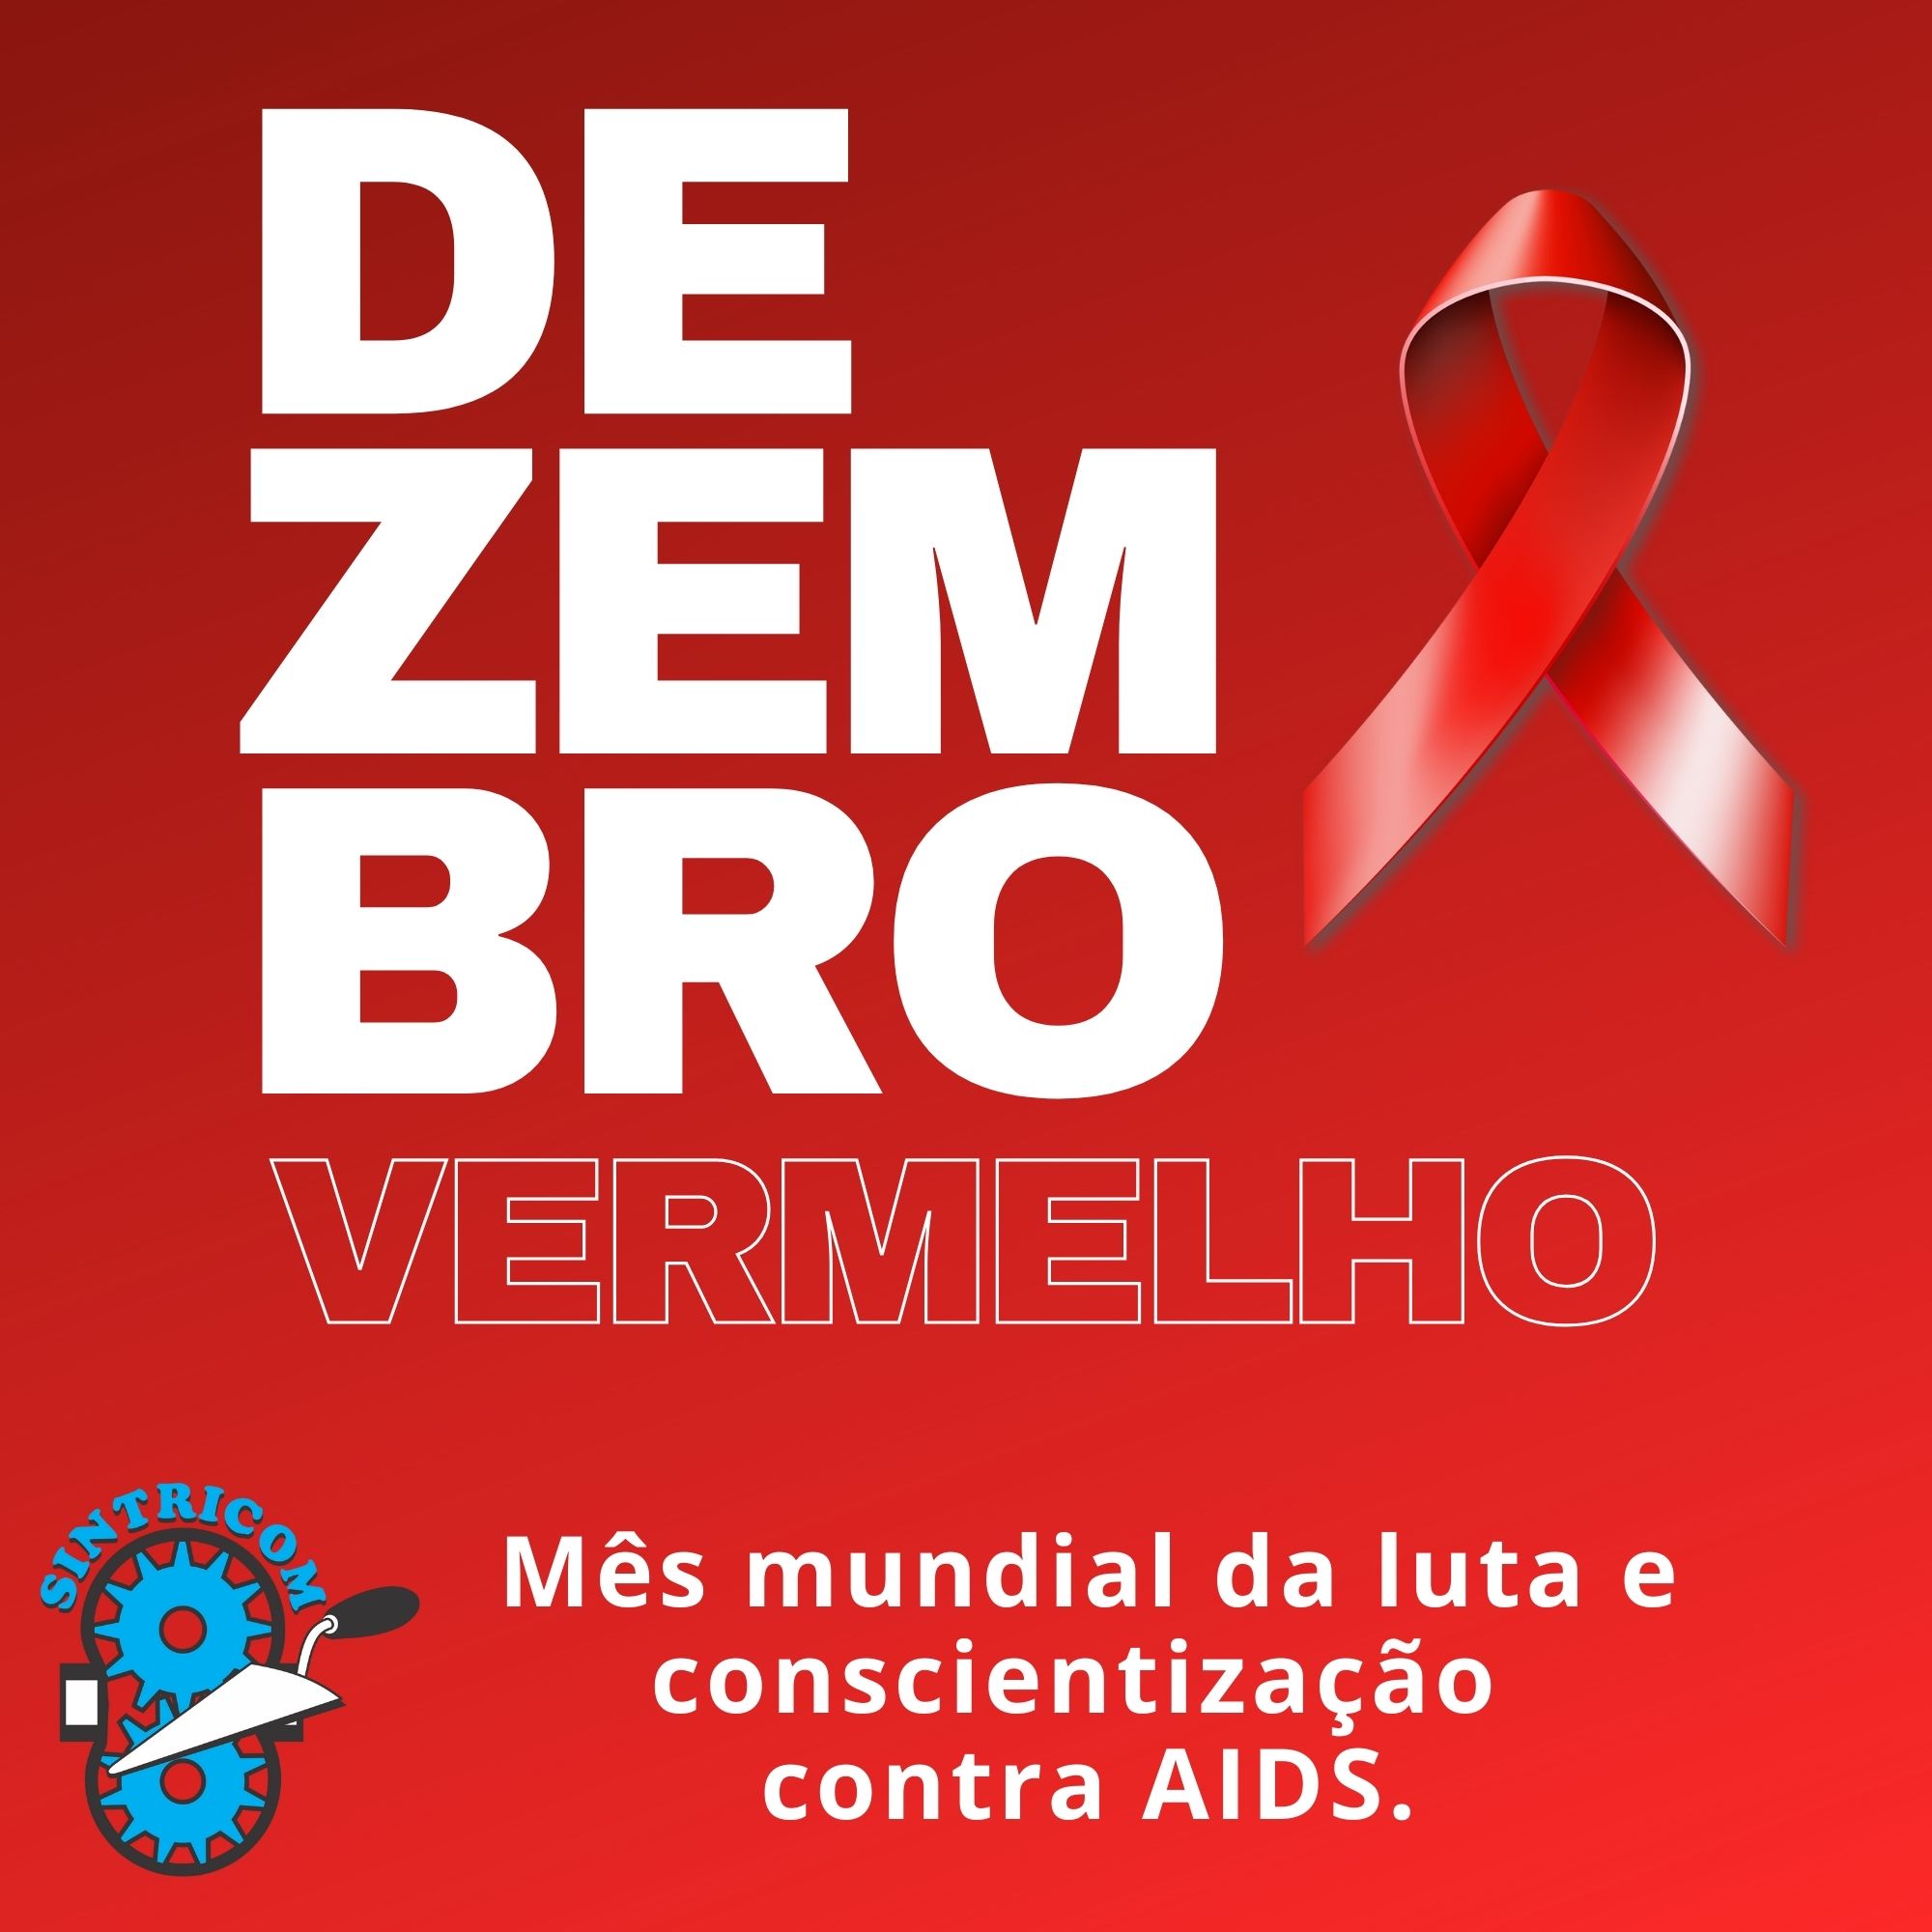 Aumento de casos de Aids entre jovens de 13 a 25 anos no Brasil preocupa, alerta especialista